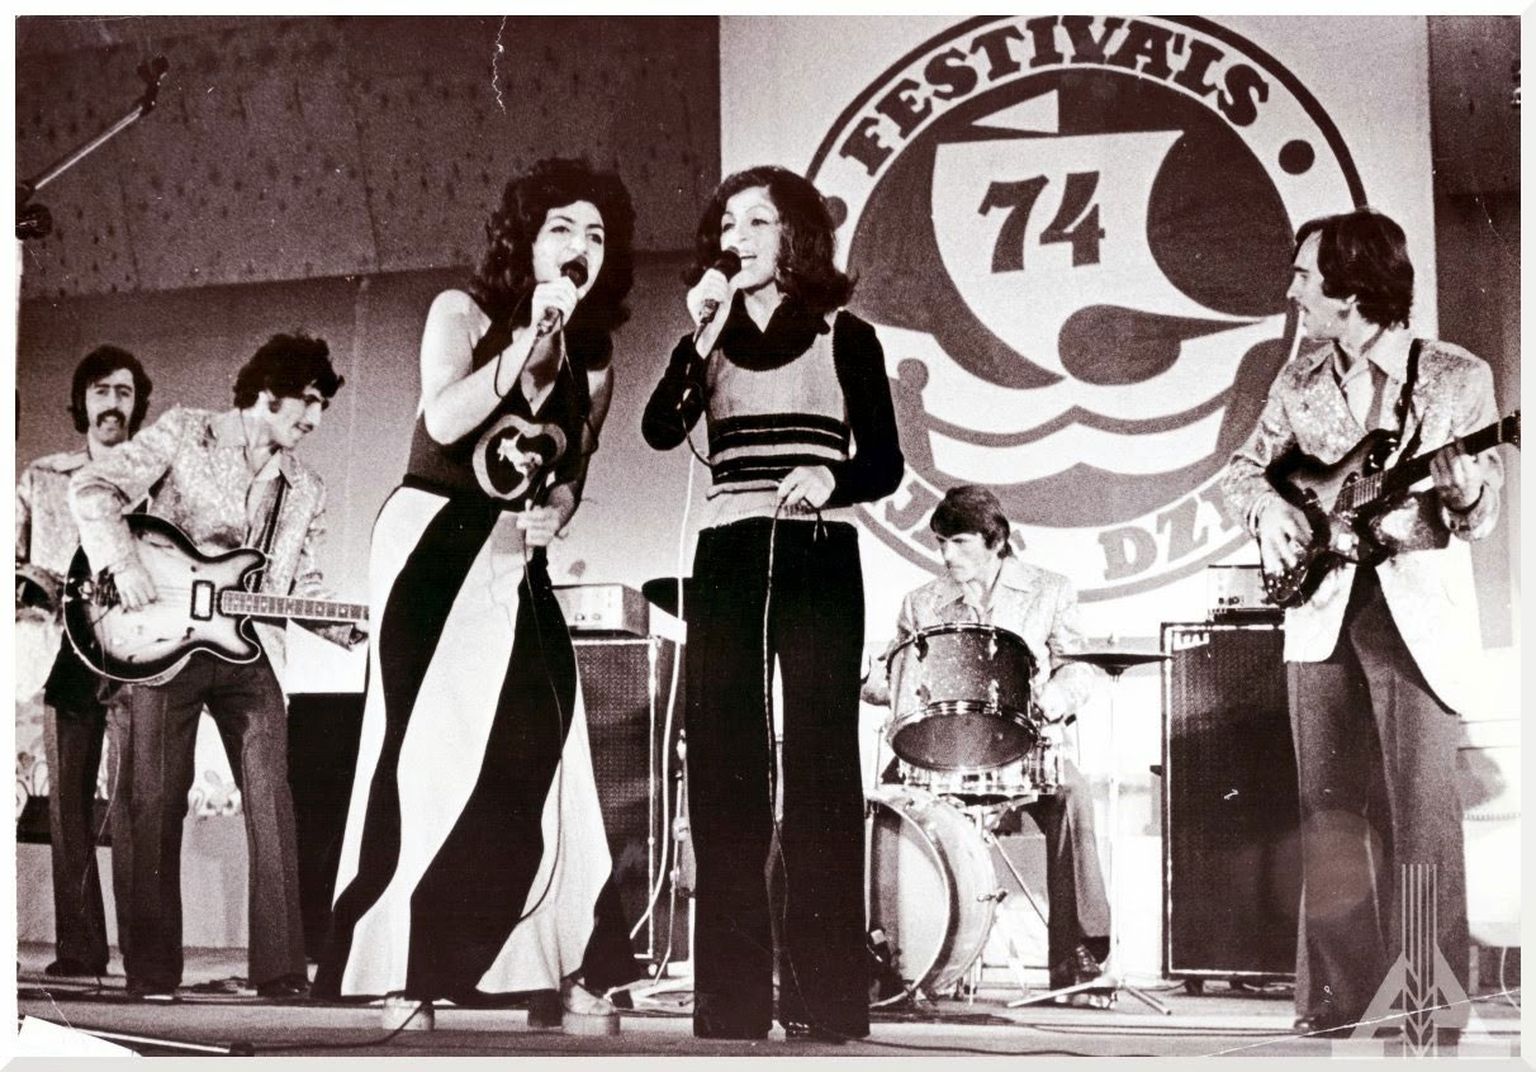 "Liepājas dzintars 1974"